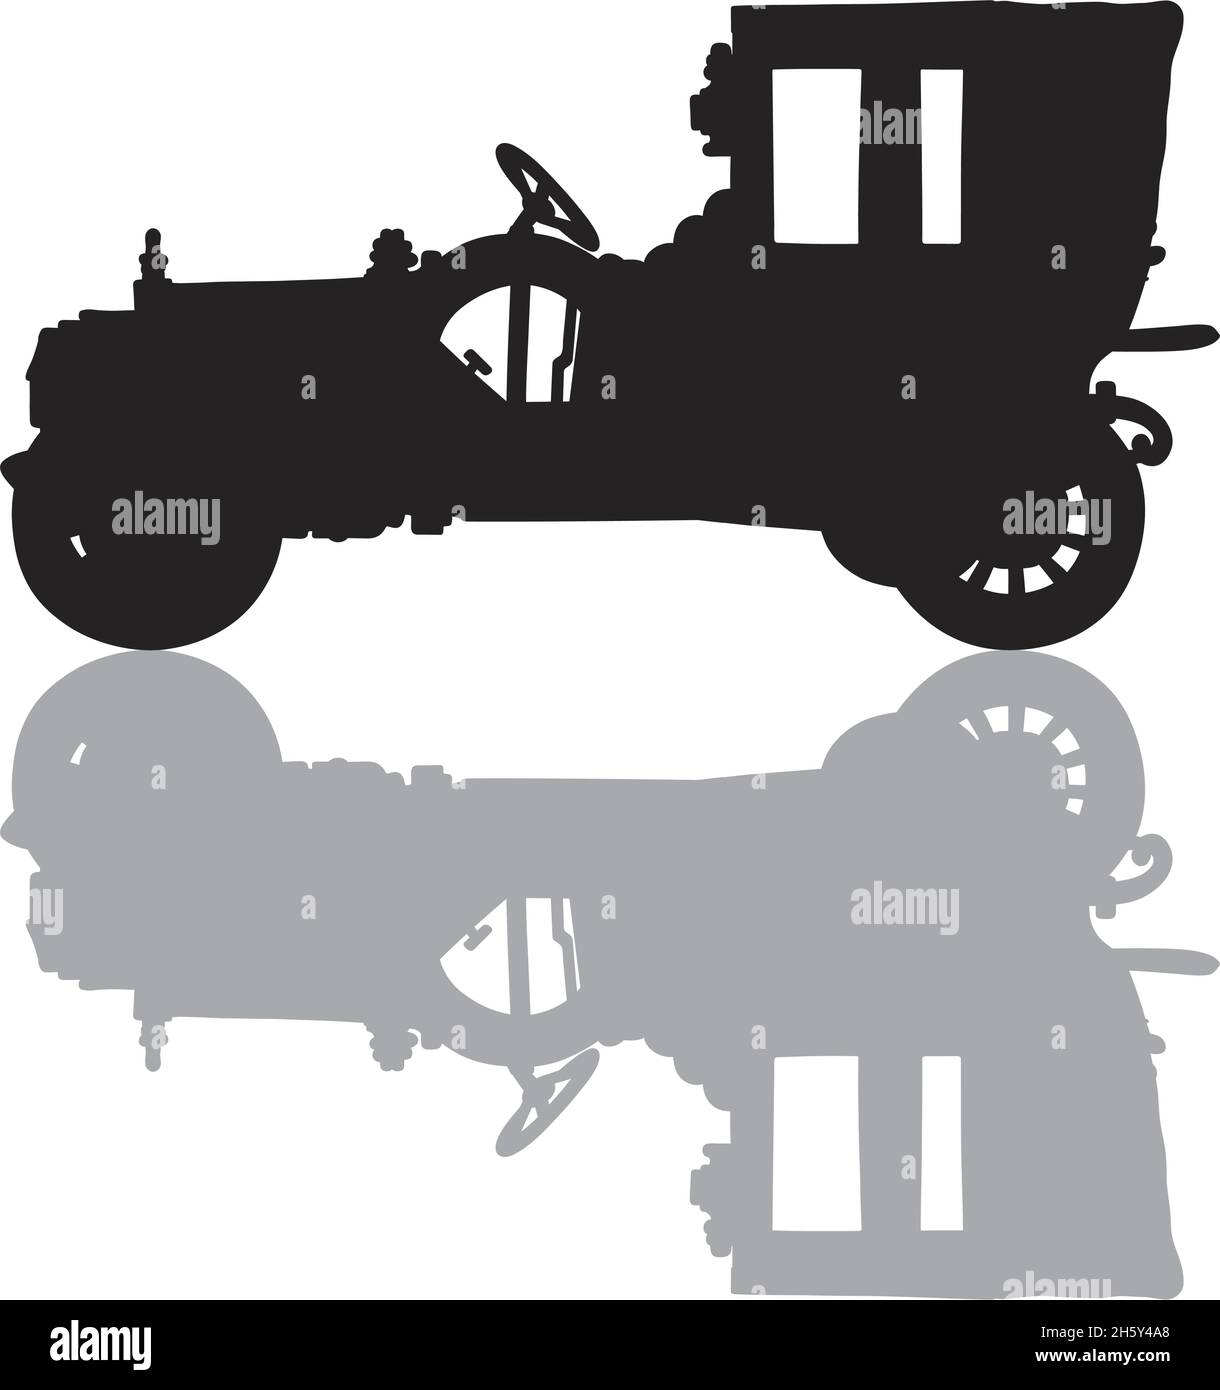 La silhouette nera di una grande limousine d'epoca con un'ombra grigia Illustrazione Vettoriale